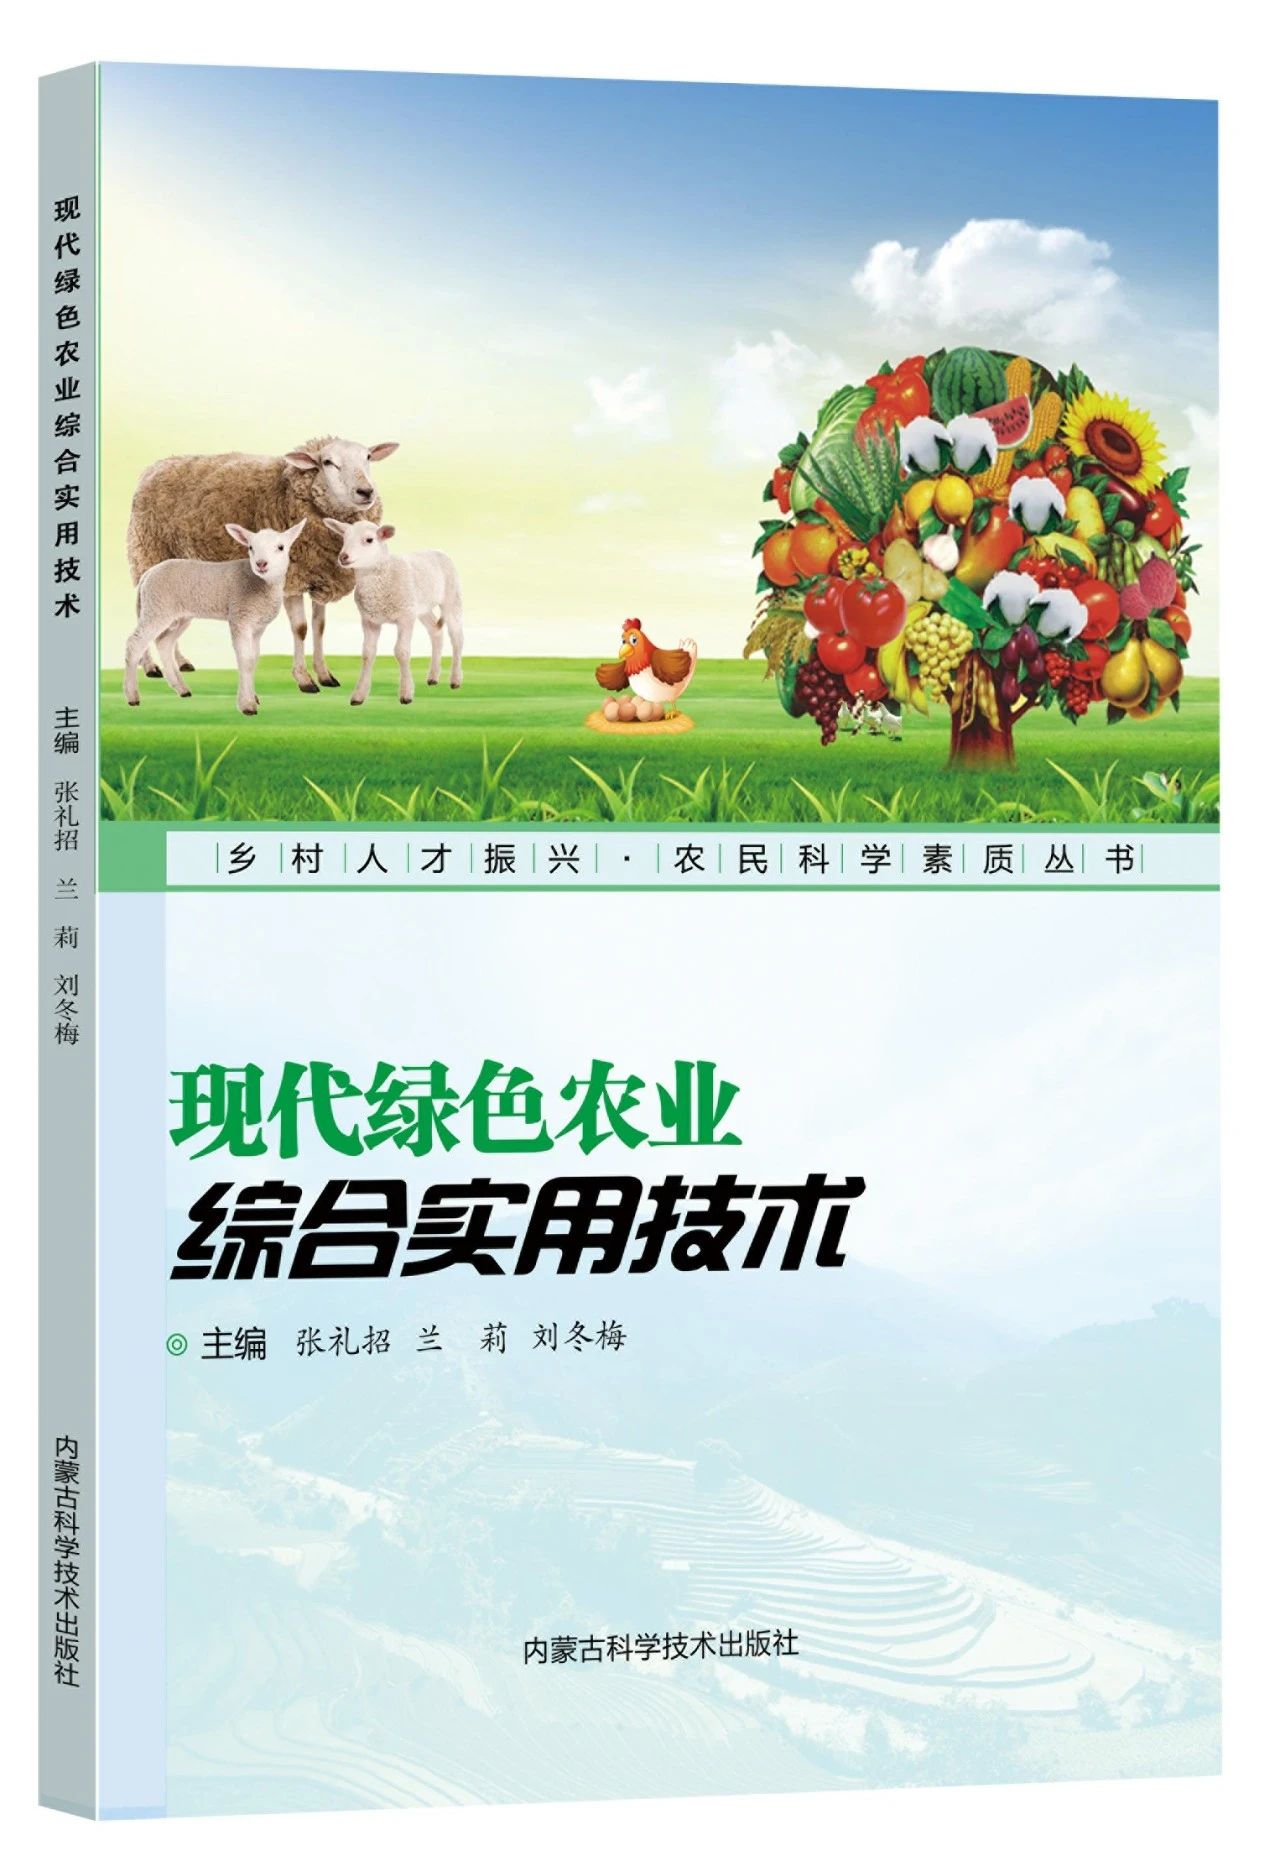  《乡村人才振兴 • 农民科学素质丛书》丨《现代绿色农业综合实用技术》